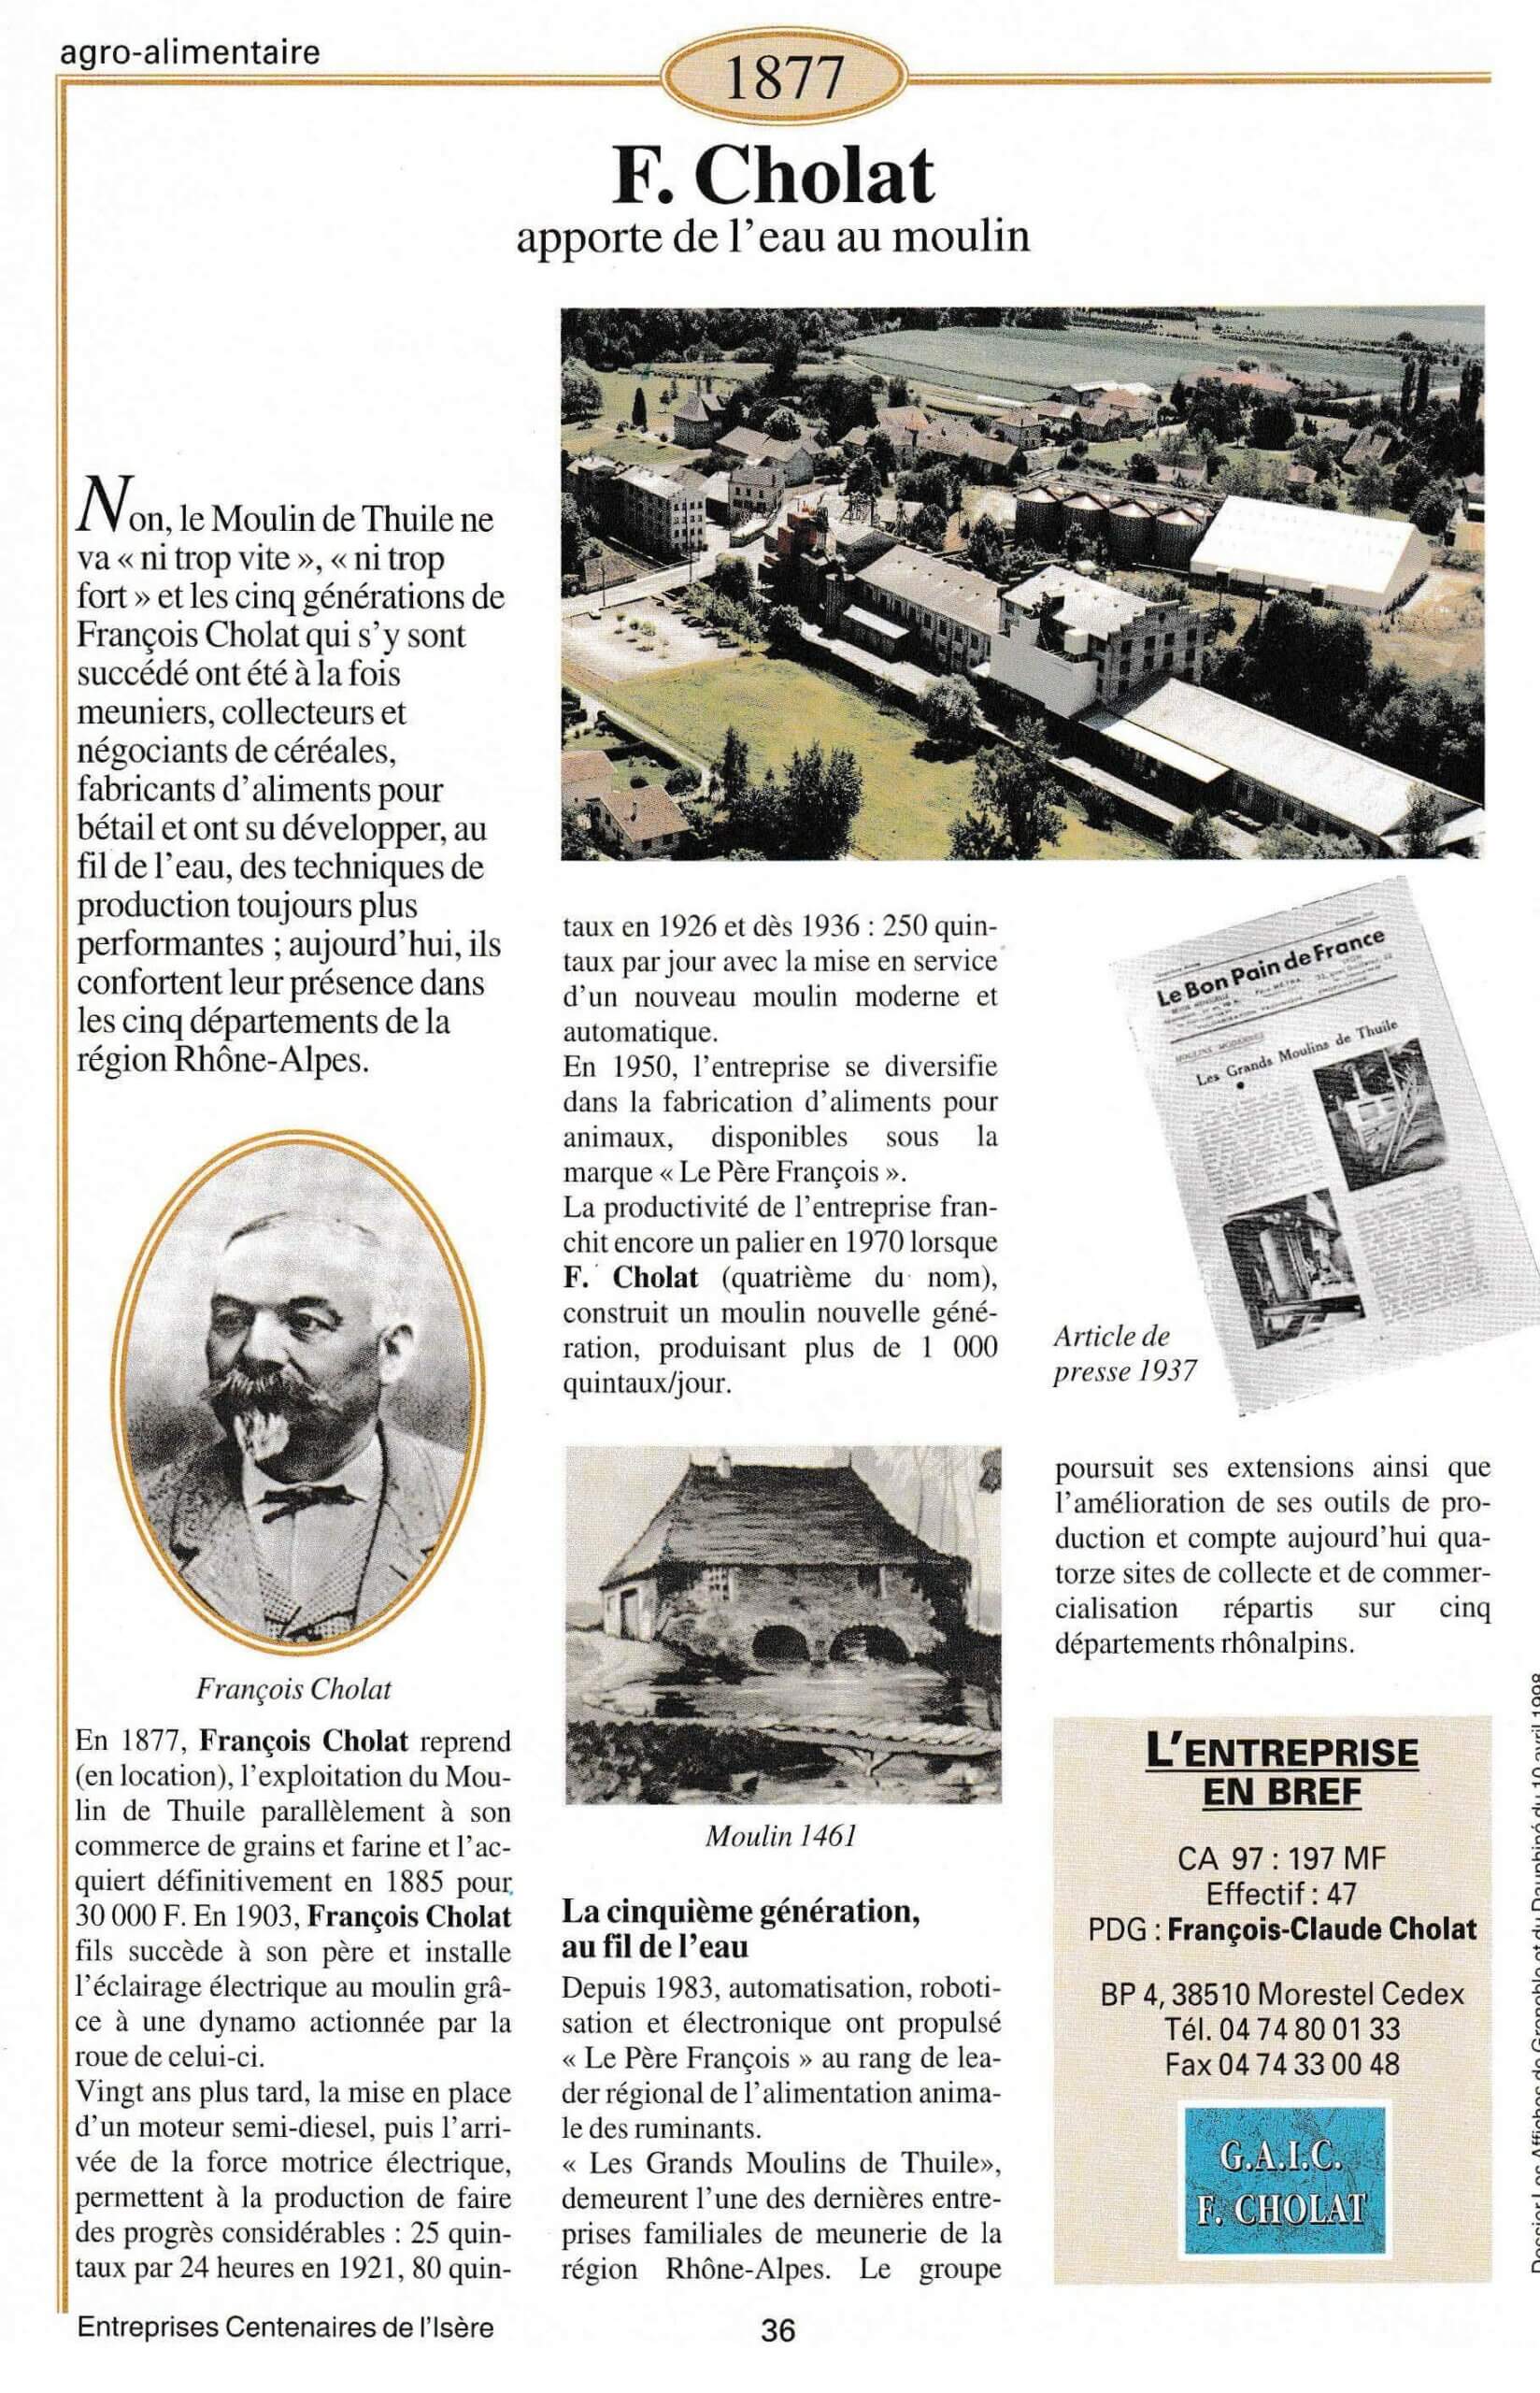 F. Chollat - fiche du supplément "Entreprises centenaires en Isère", publié par Les affiches de Grenoble et du Dauphiné, juin 1998.